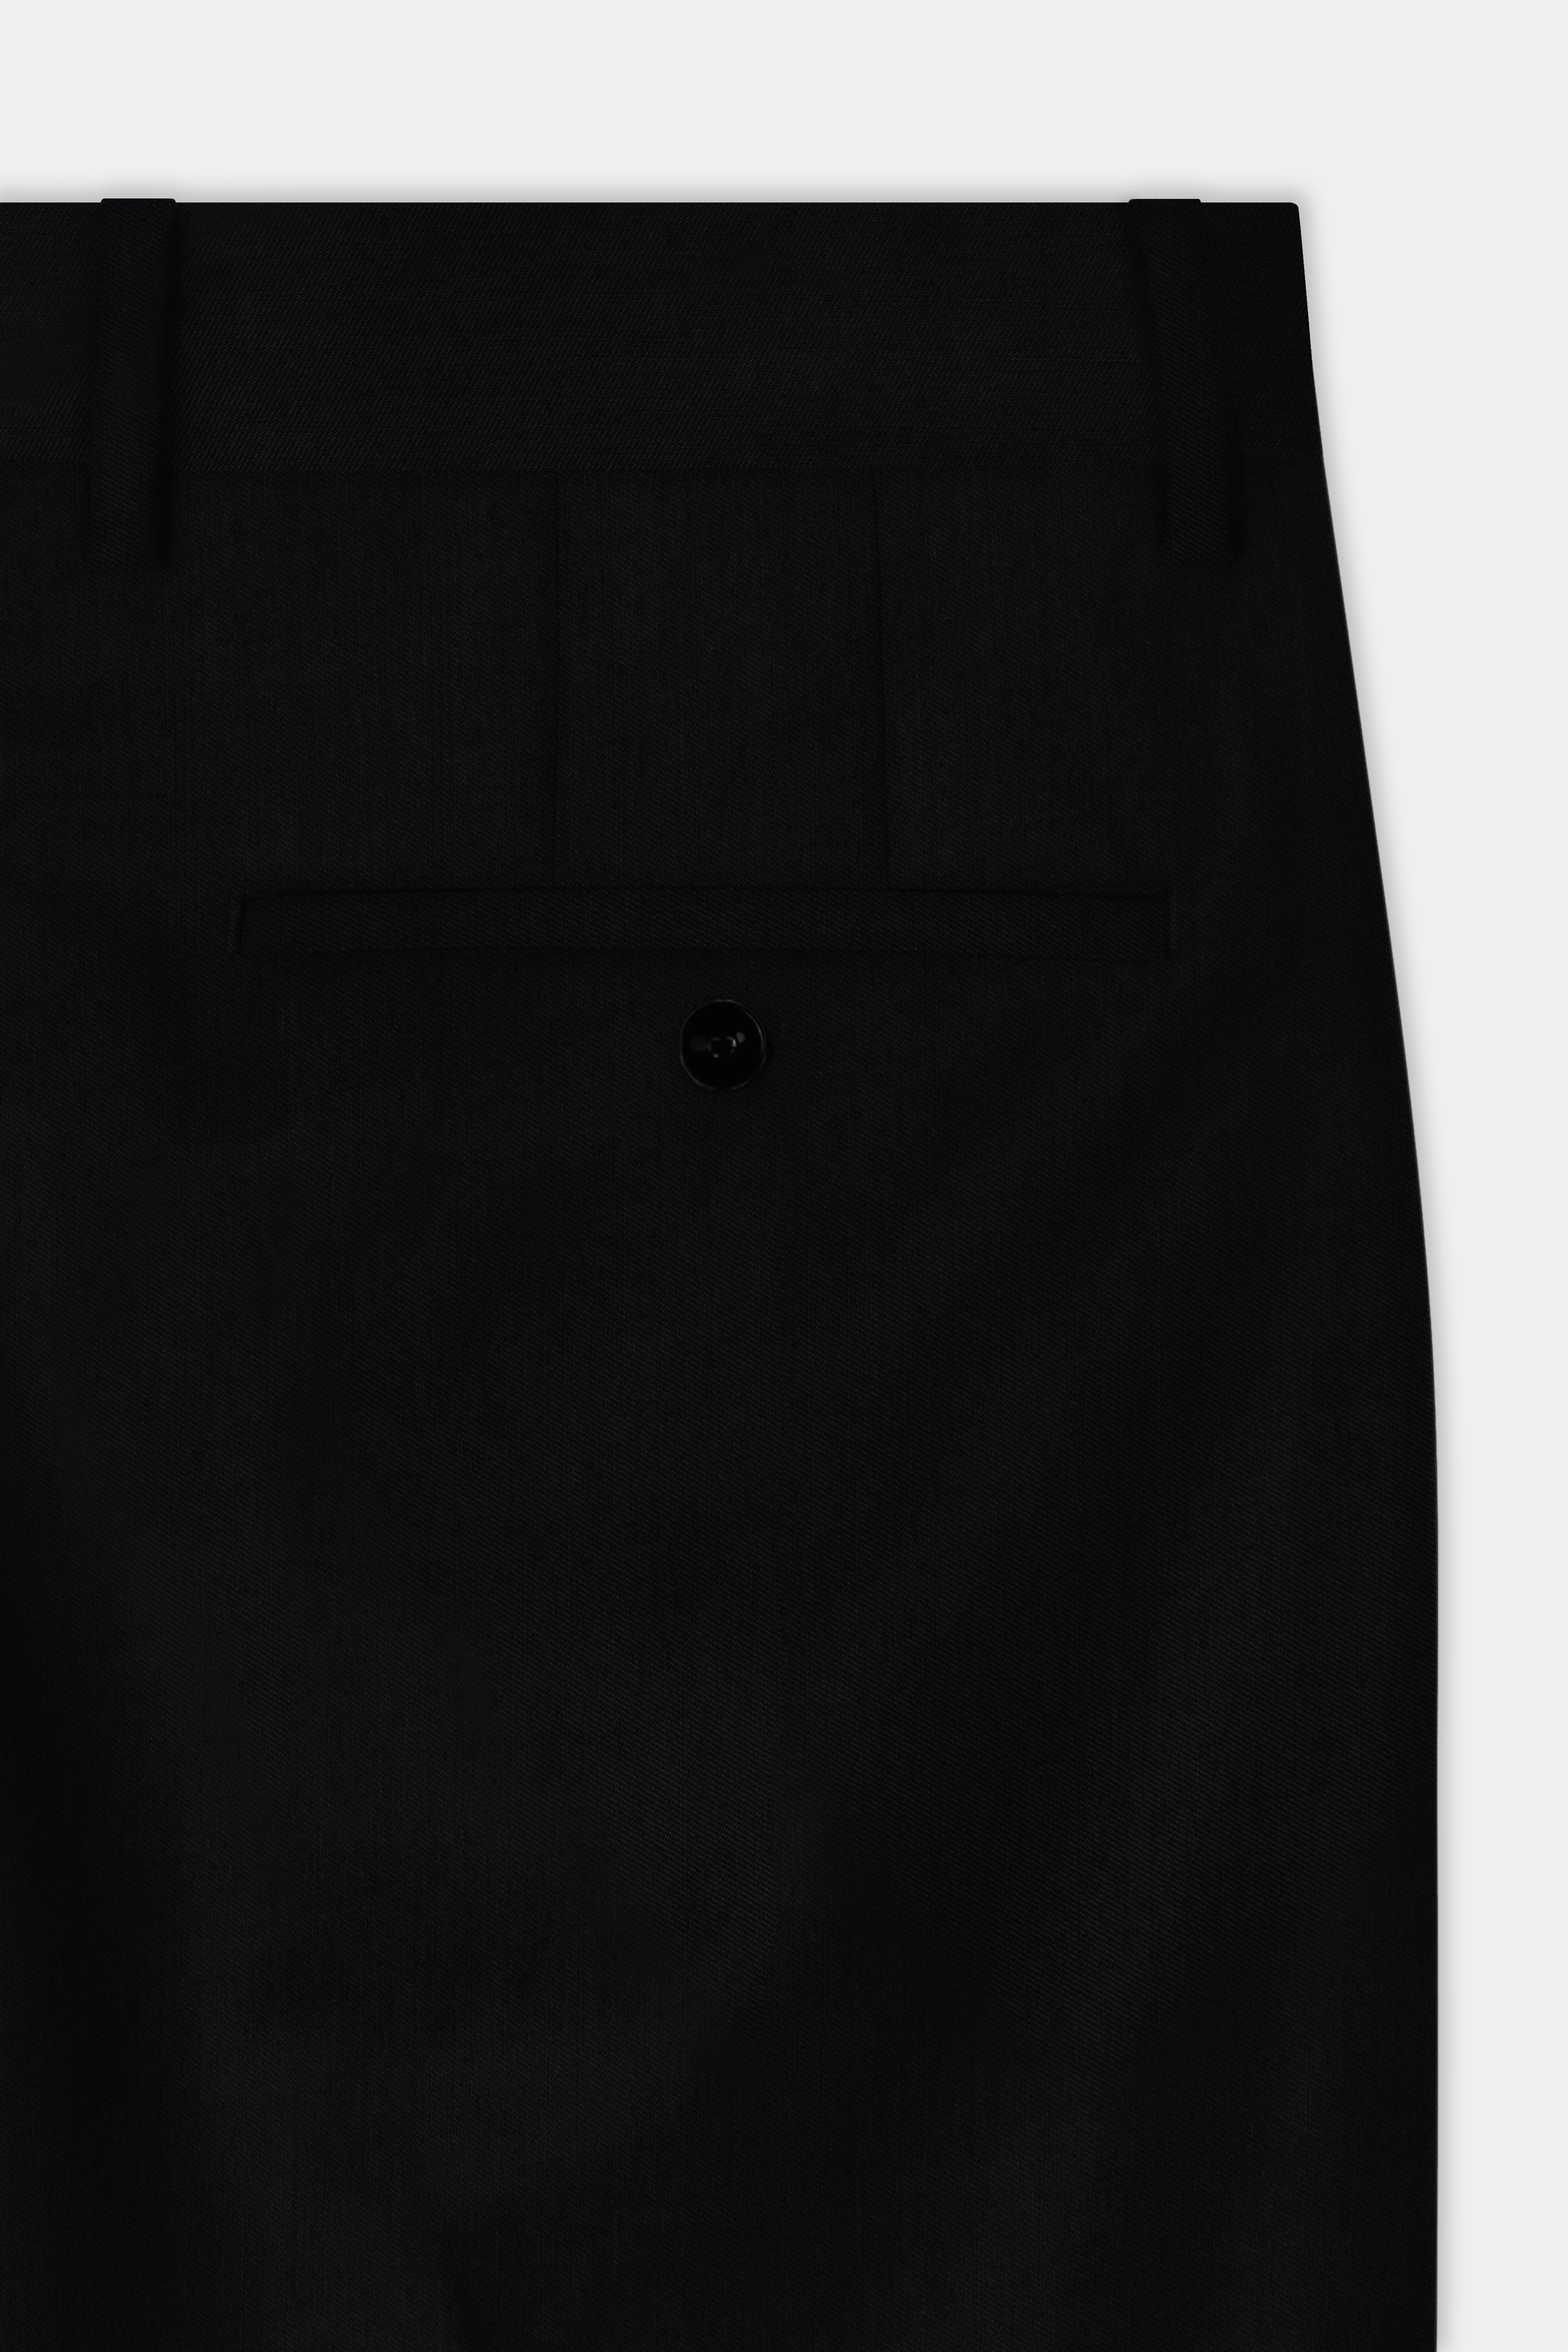 Jade Black Plain Solid Wool Blend Pant